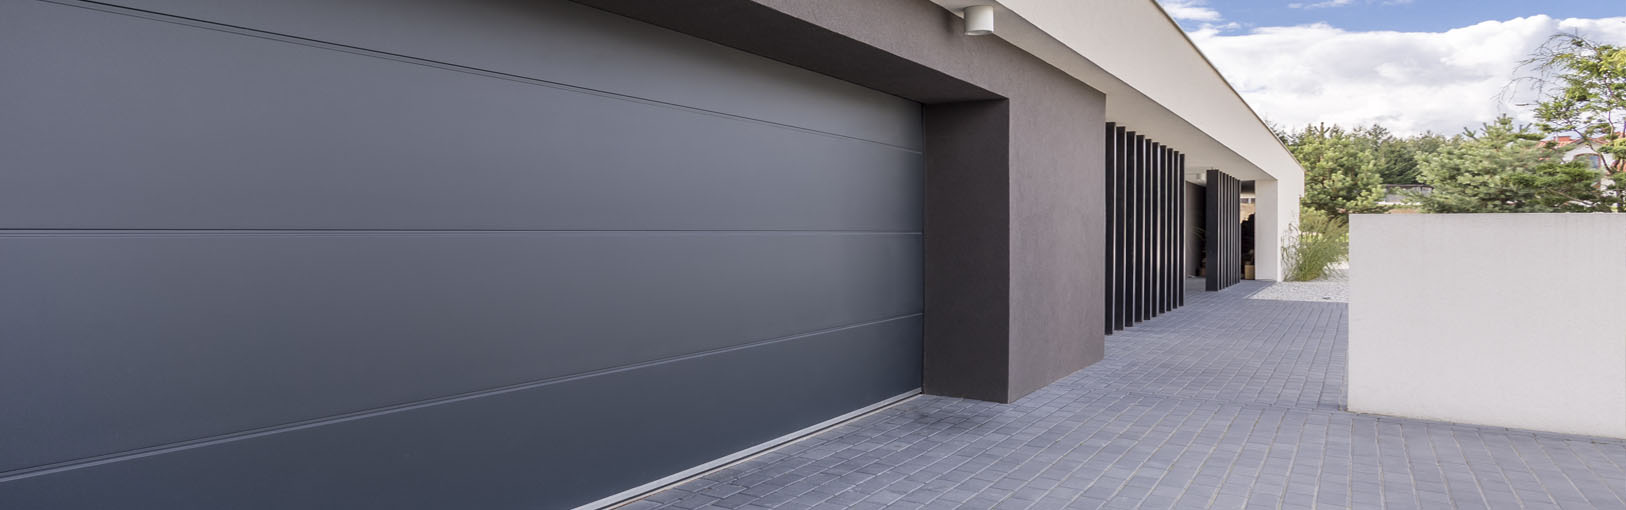 puerta automatica garaje madrid - Mantenimiento de puertas de garaje